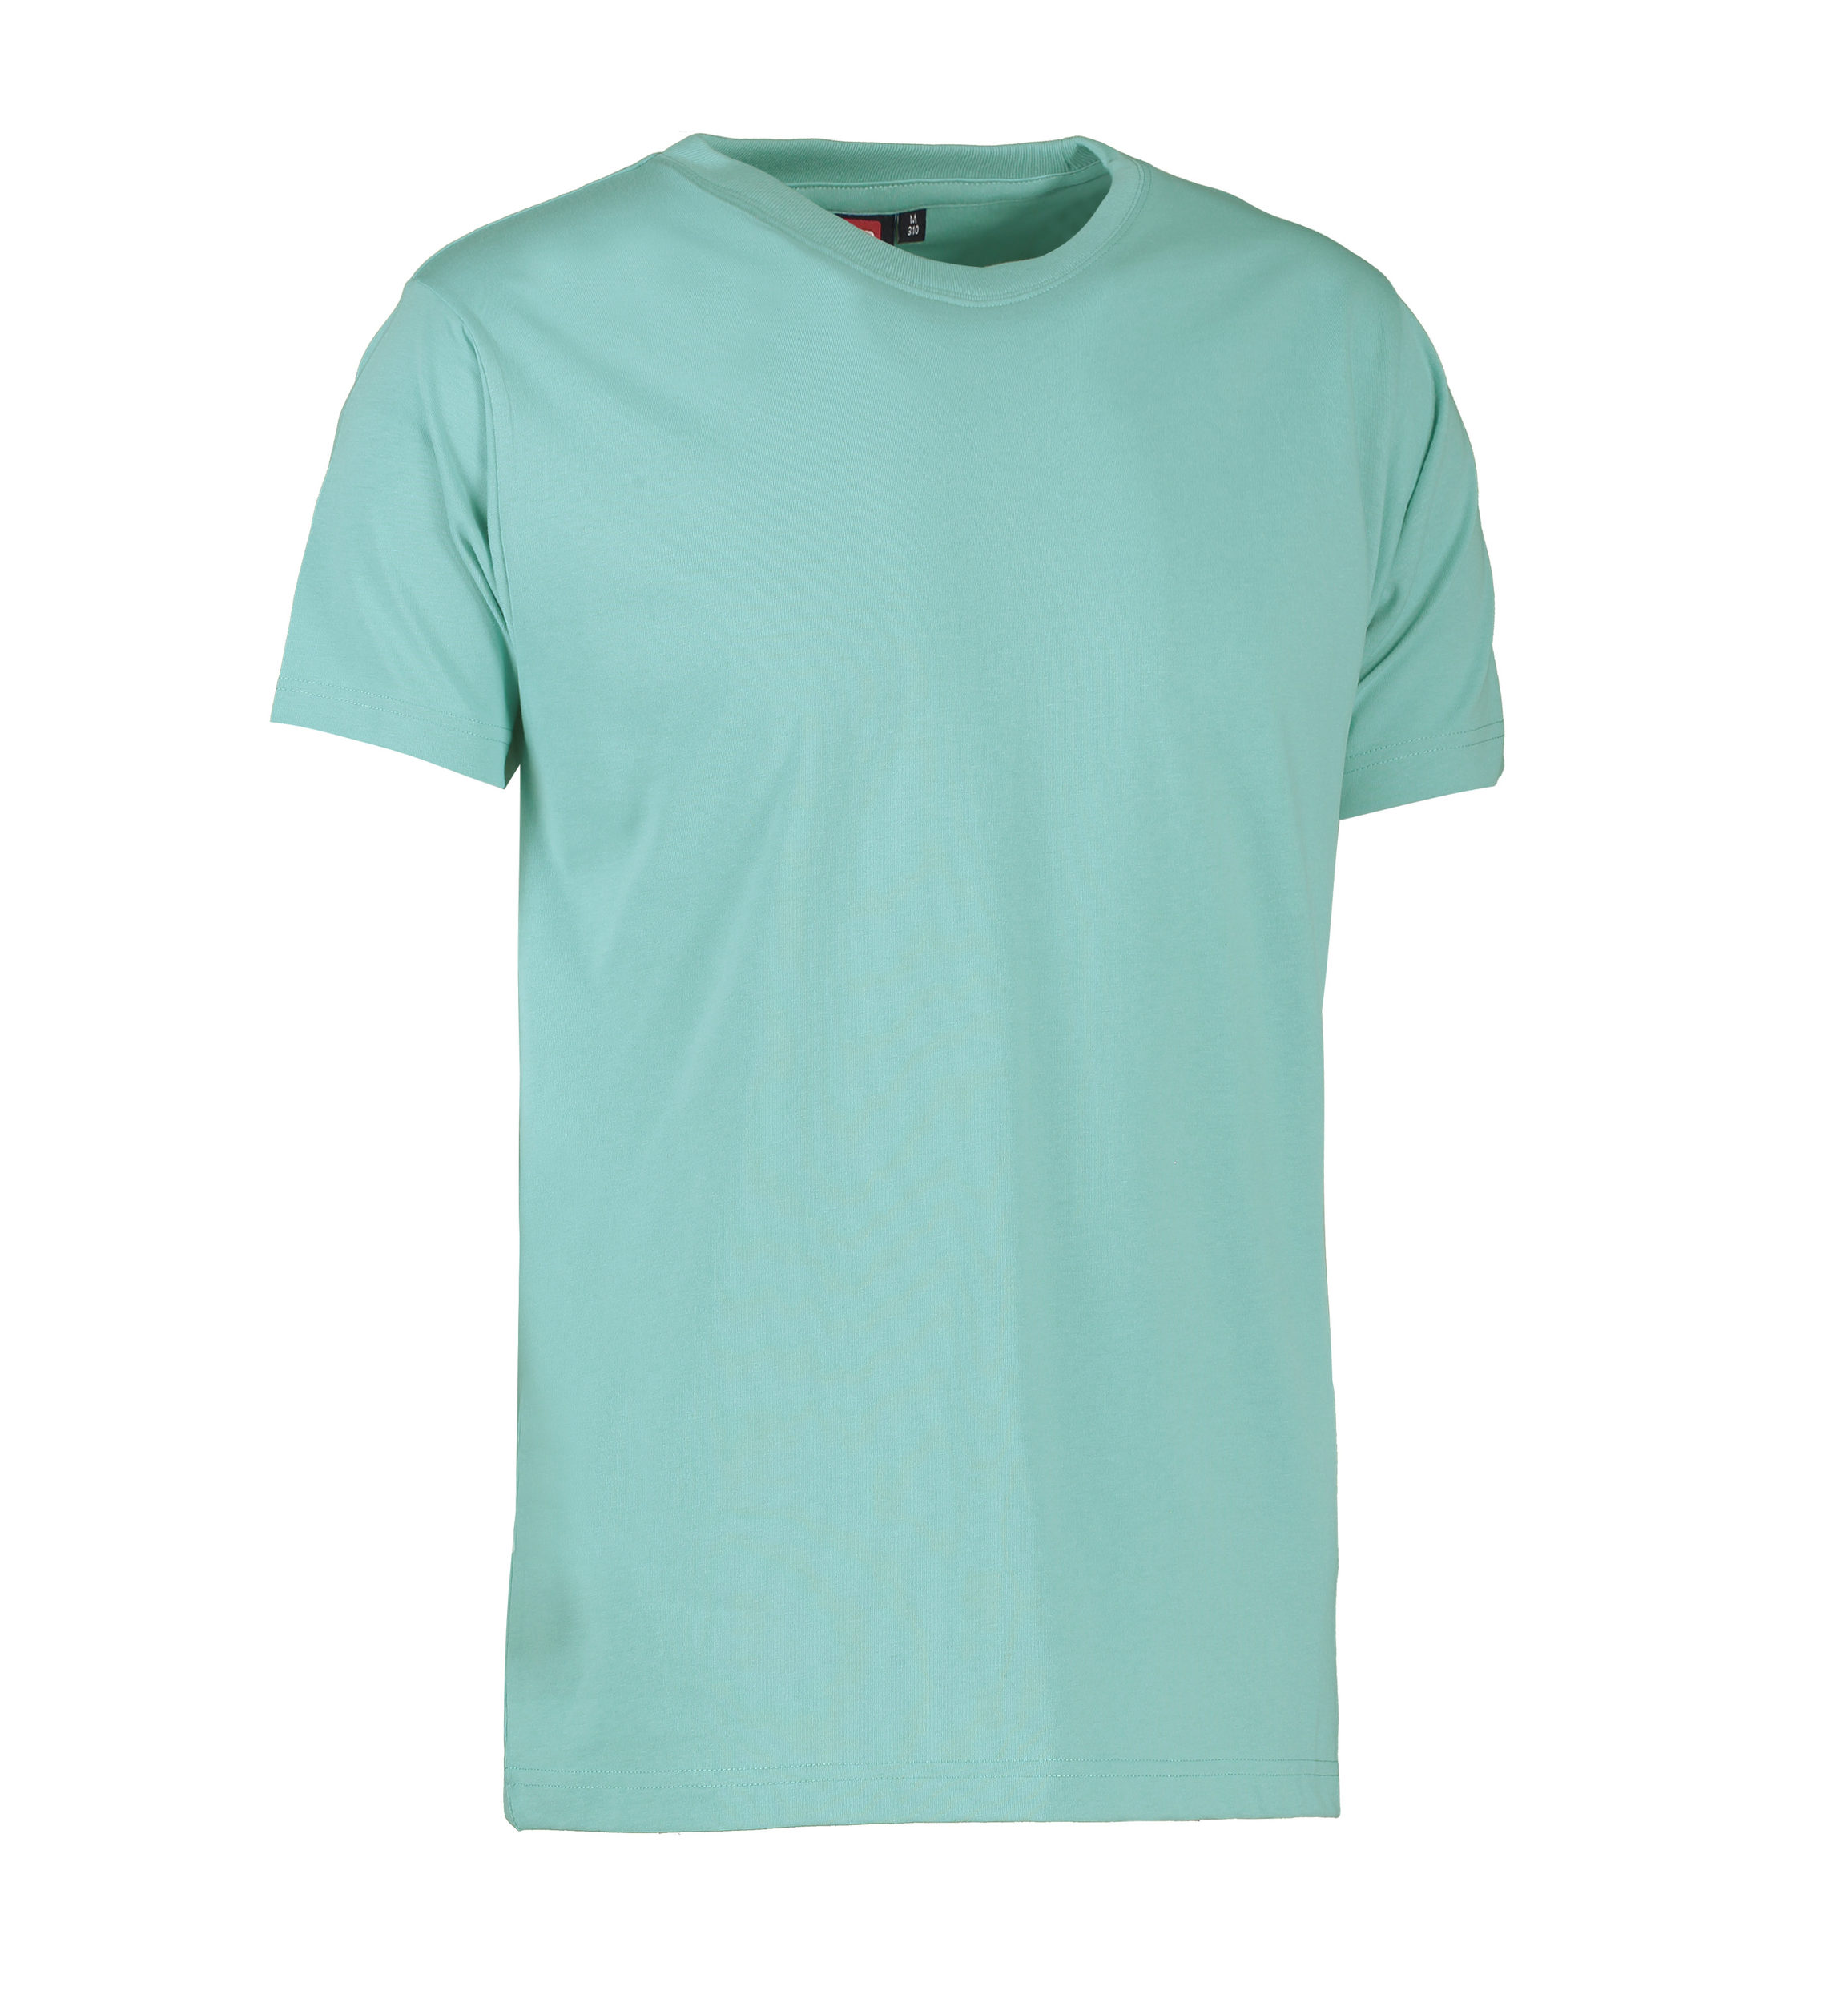 Billede af Slidstærk t-shirt i lys grøn til mænd - XS hos Sygeplejebutikken.dk